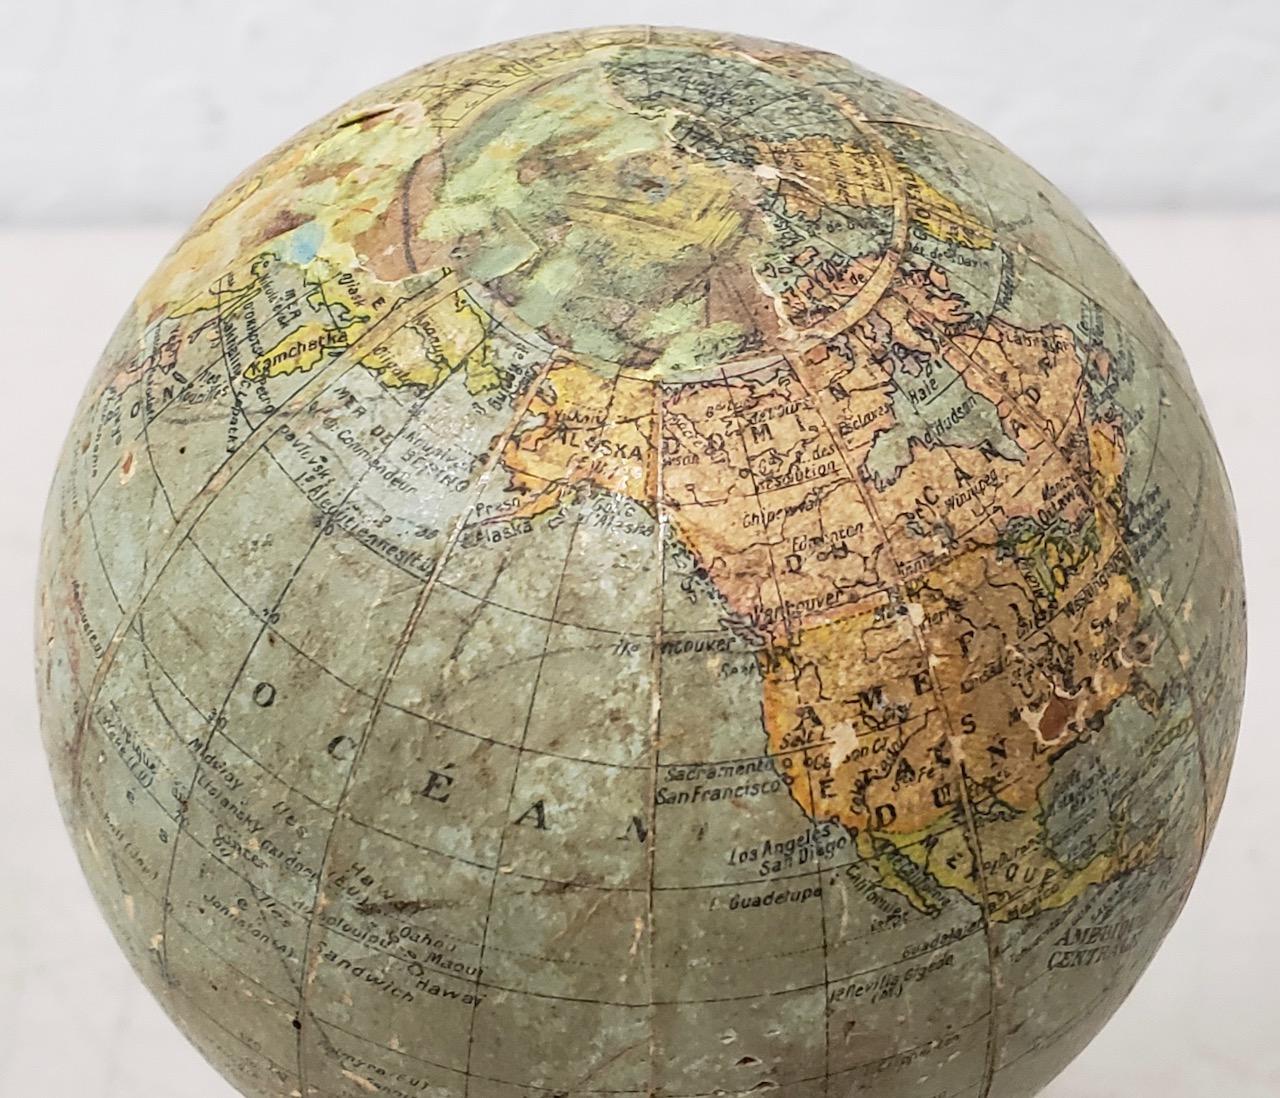 Rare globe terrestre du 19e siècle par G. Thomas, Editeur & Globe Maker, Paris, circa 1890s

Le globe est posé sur un support en bois et mesure 4